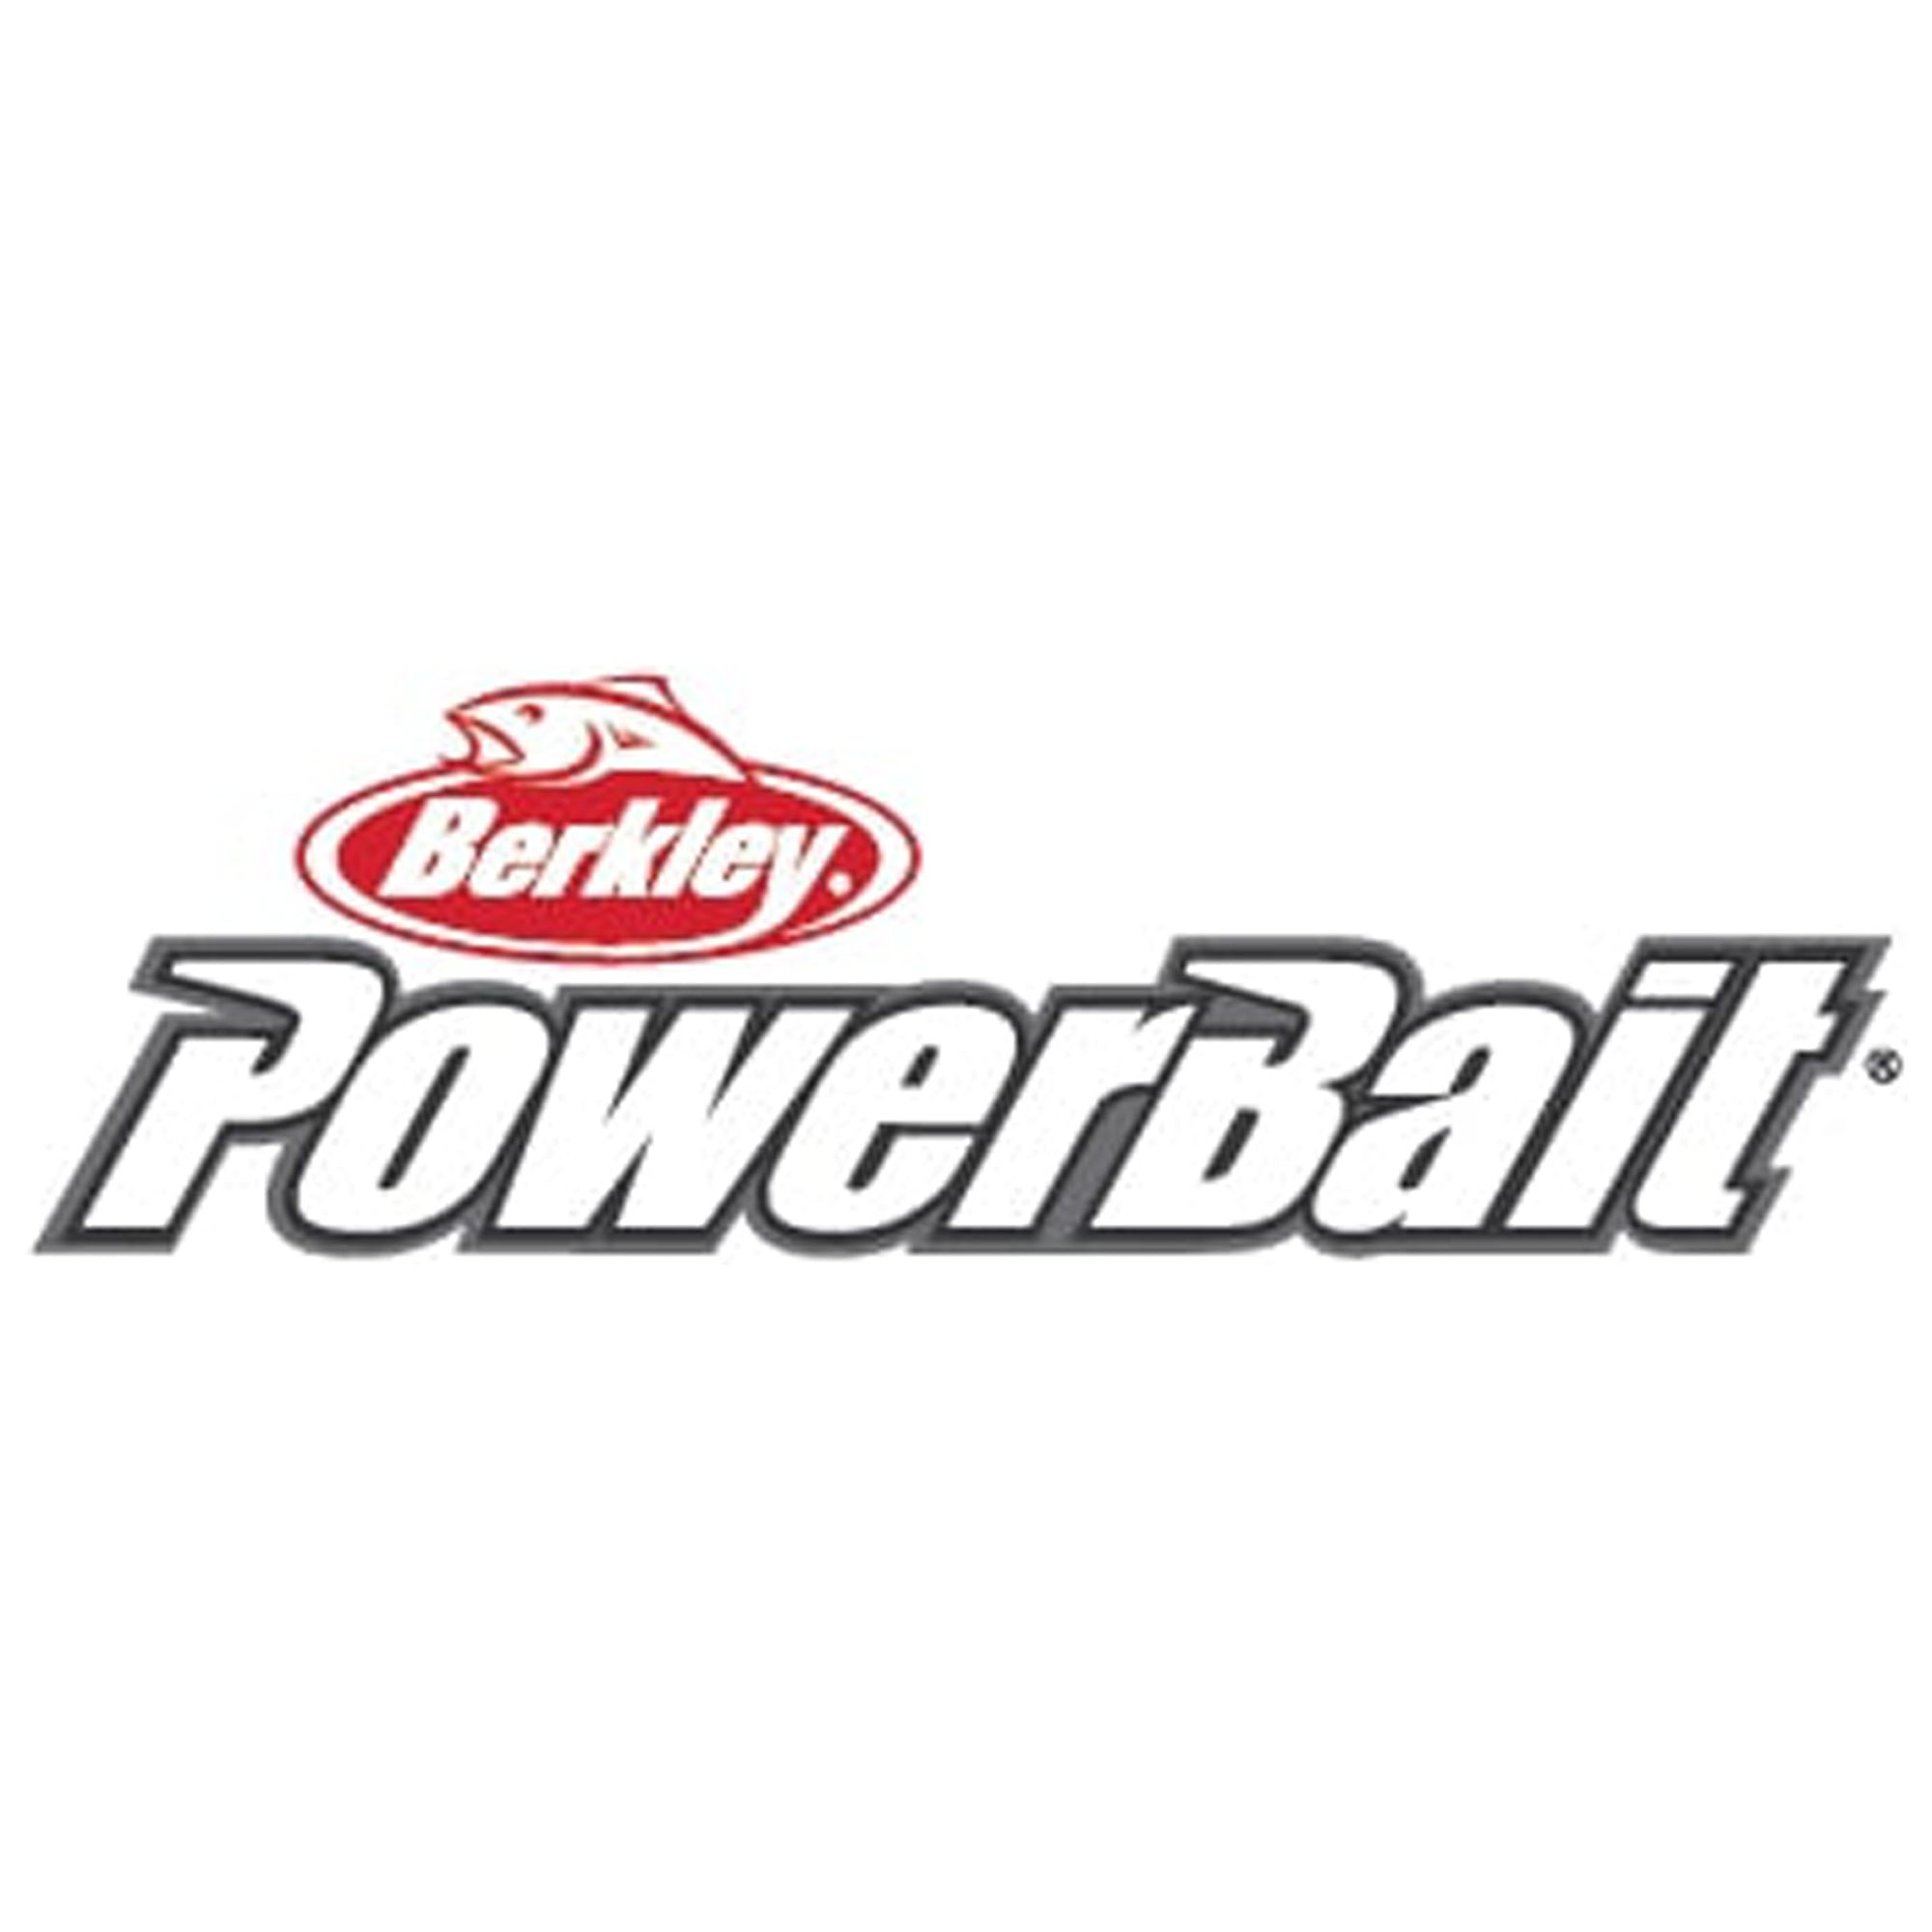 Berkley PowerBait Natural Scent Trout Fishing Dough Bait 